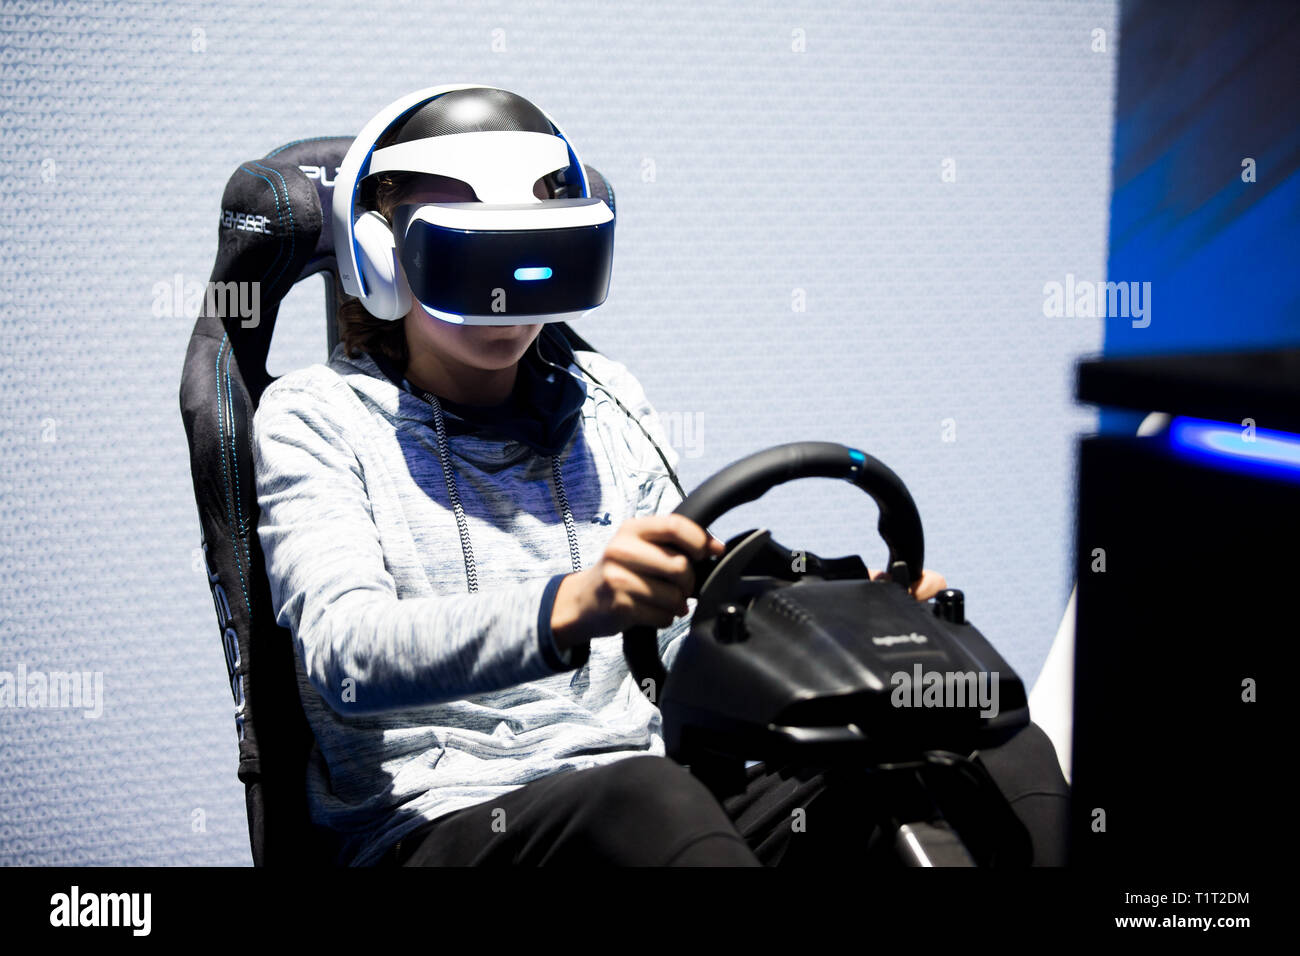 HELSINKI, Finlandia - 4 Novembre 2016: GIOCHI VR. Gli adolescenti utilizzano la realtà virtuale caschi Sony PlayStation 4, racing simulatore. Foto Stock